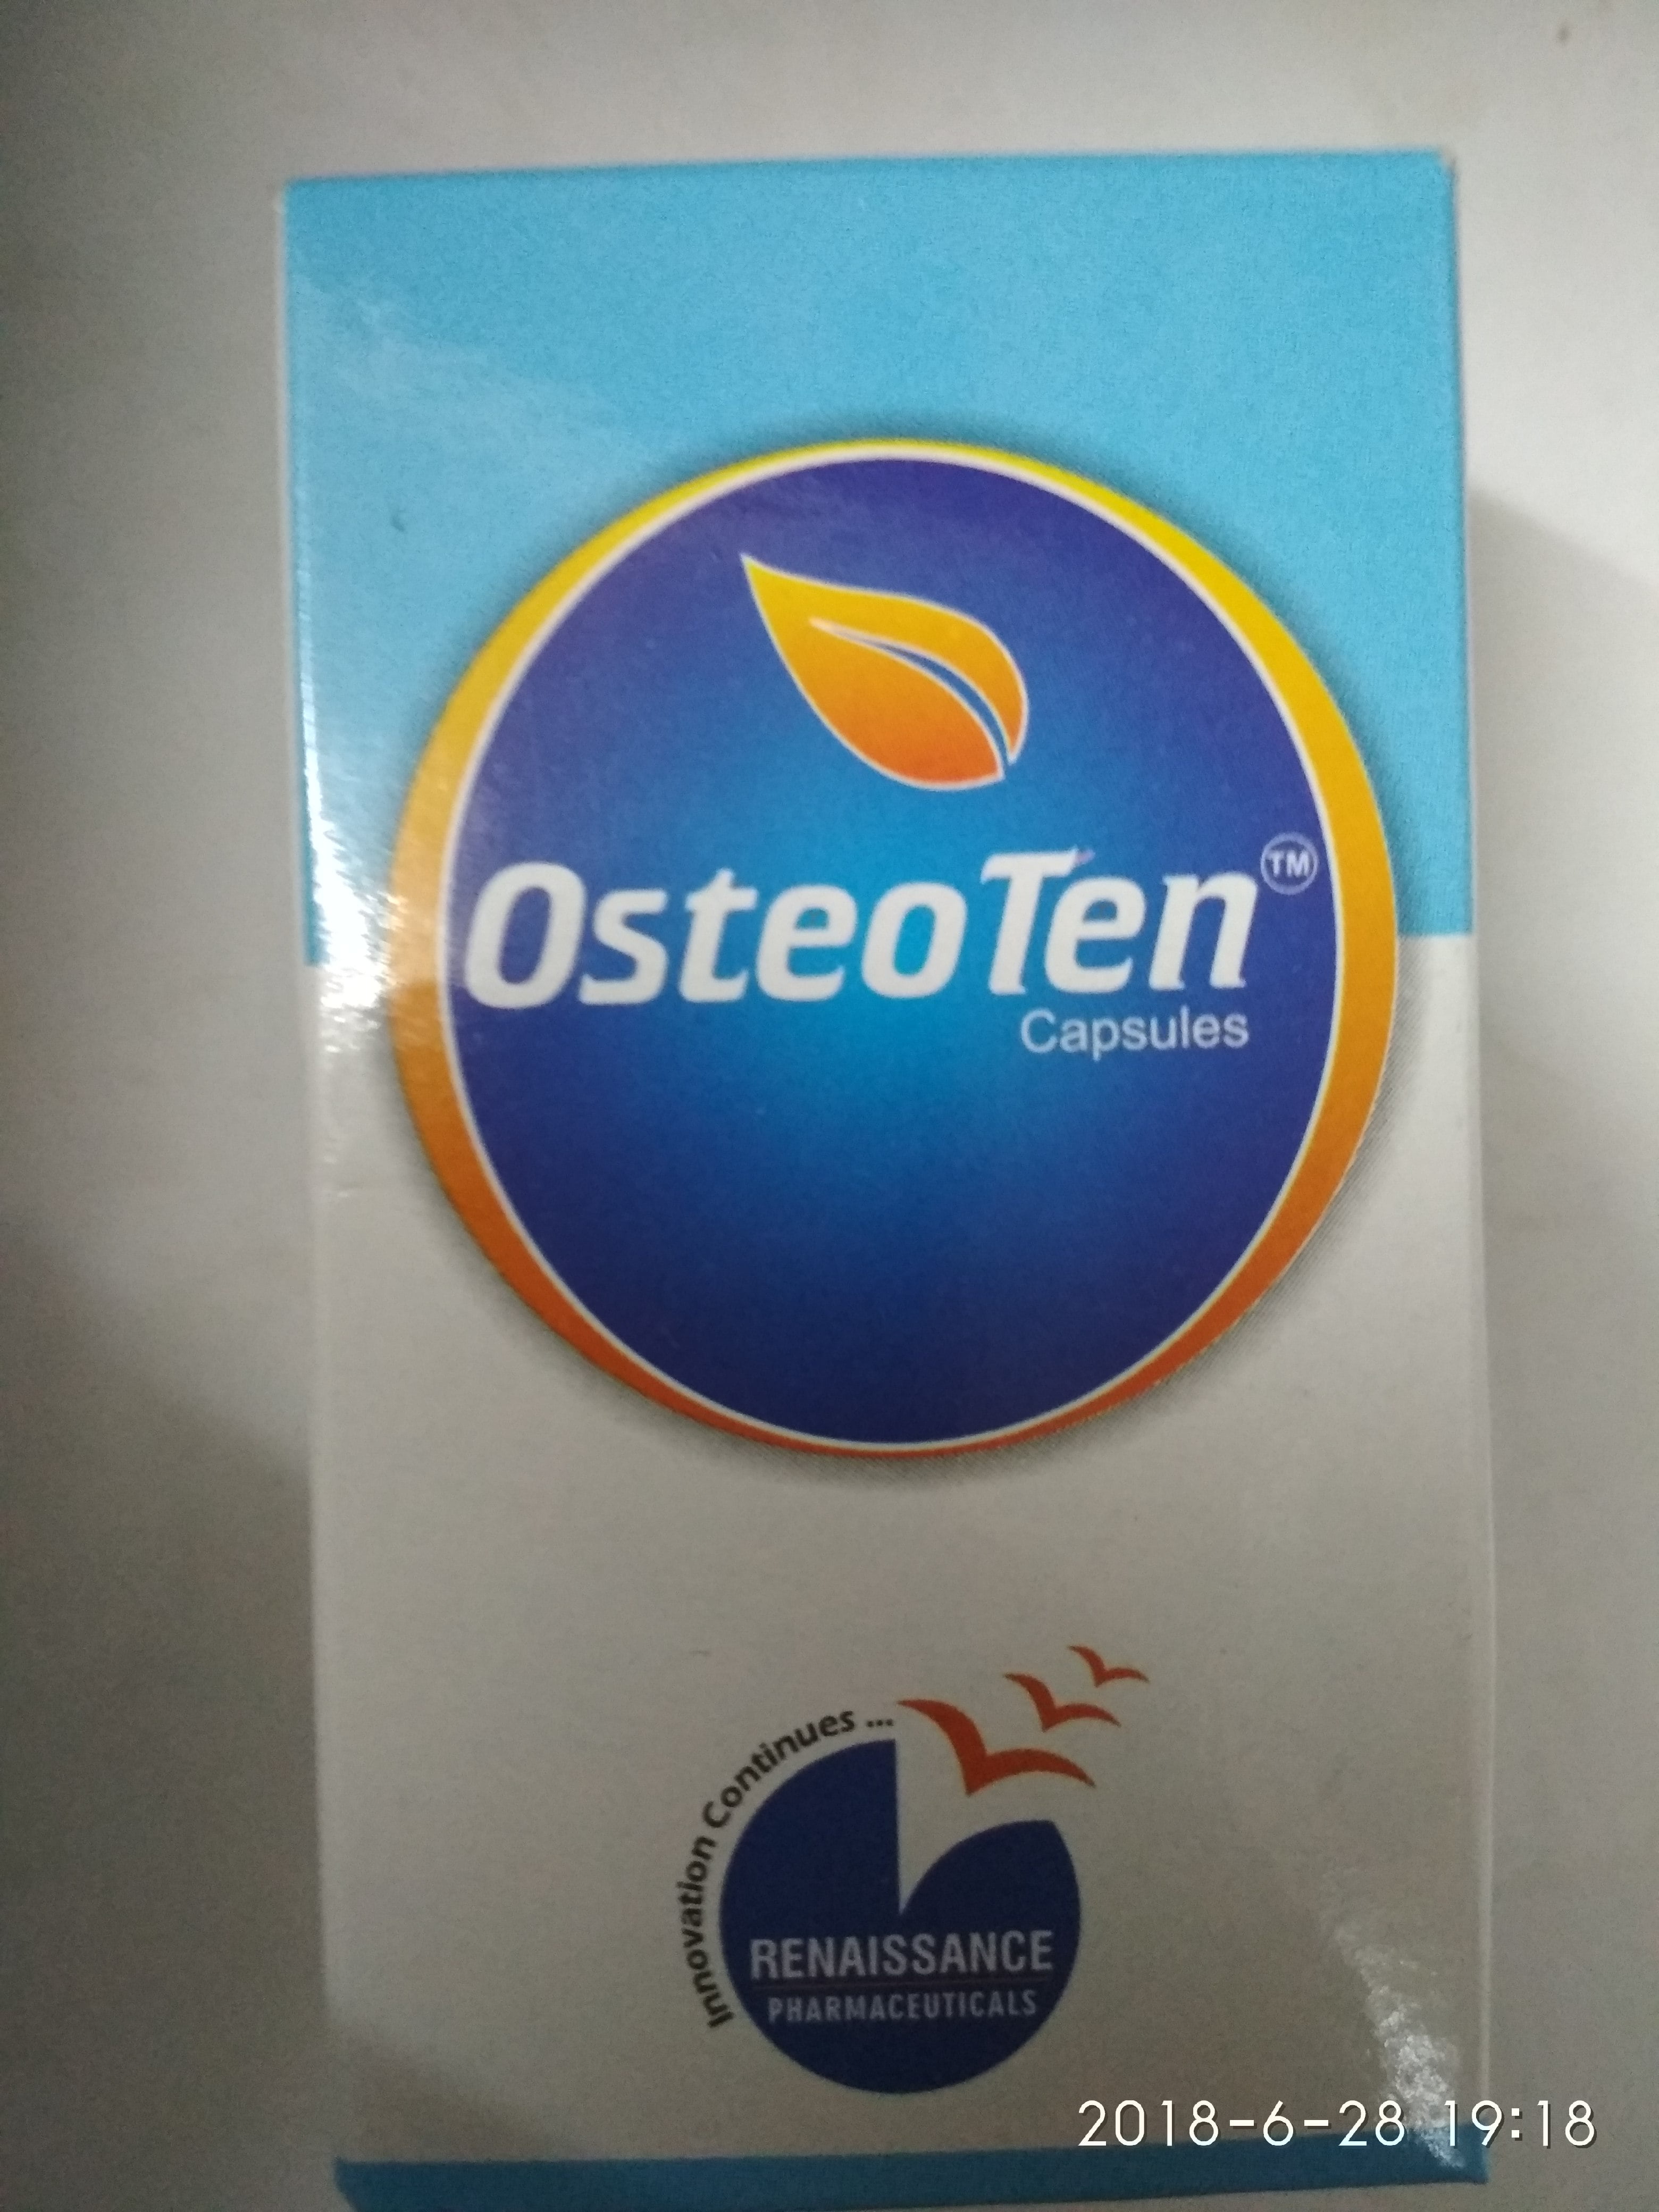 osteoten capsule 30cap upto 10% off Renaissance pharmaceuticals